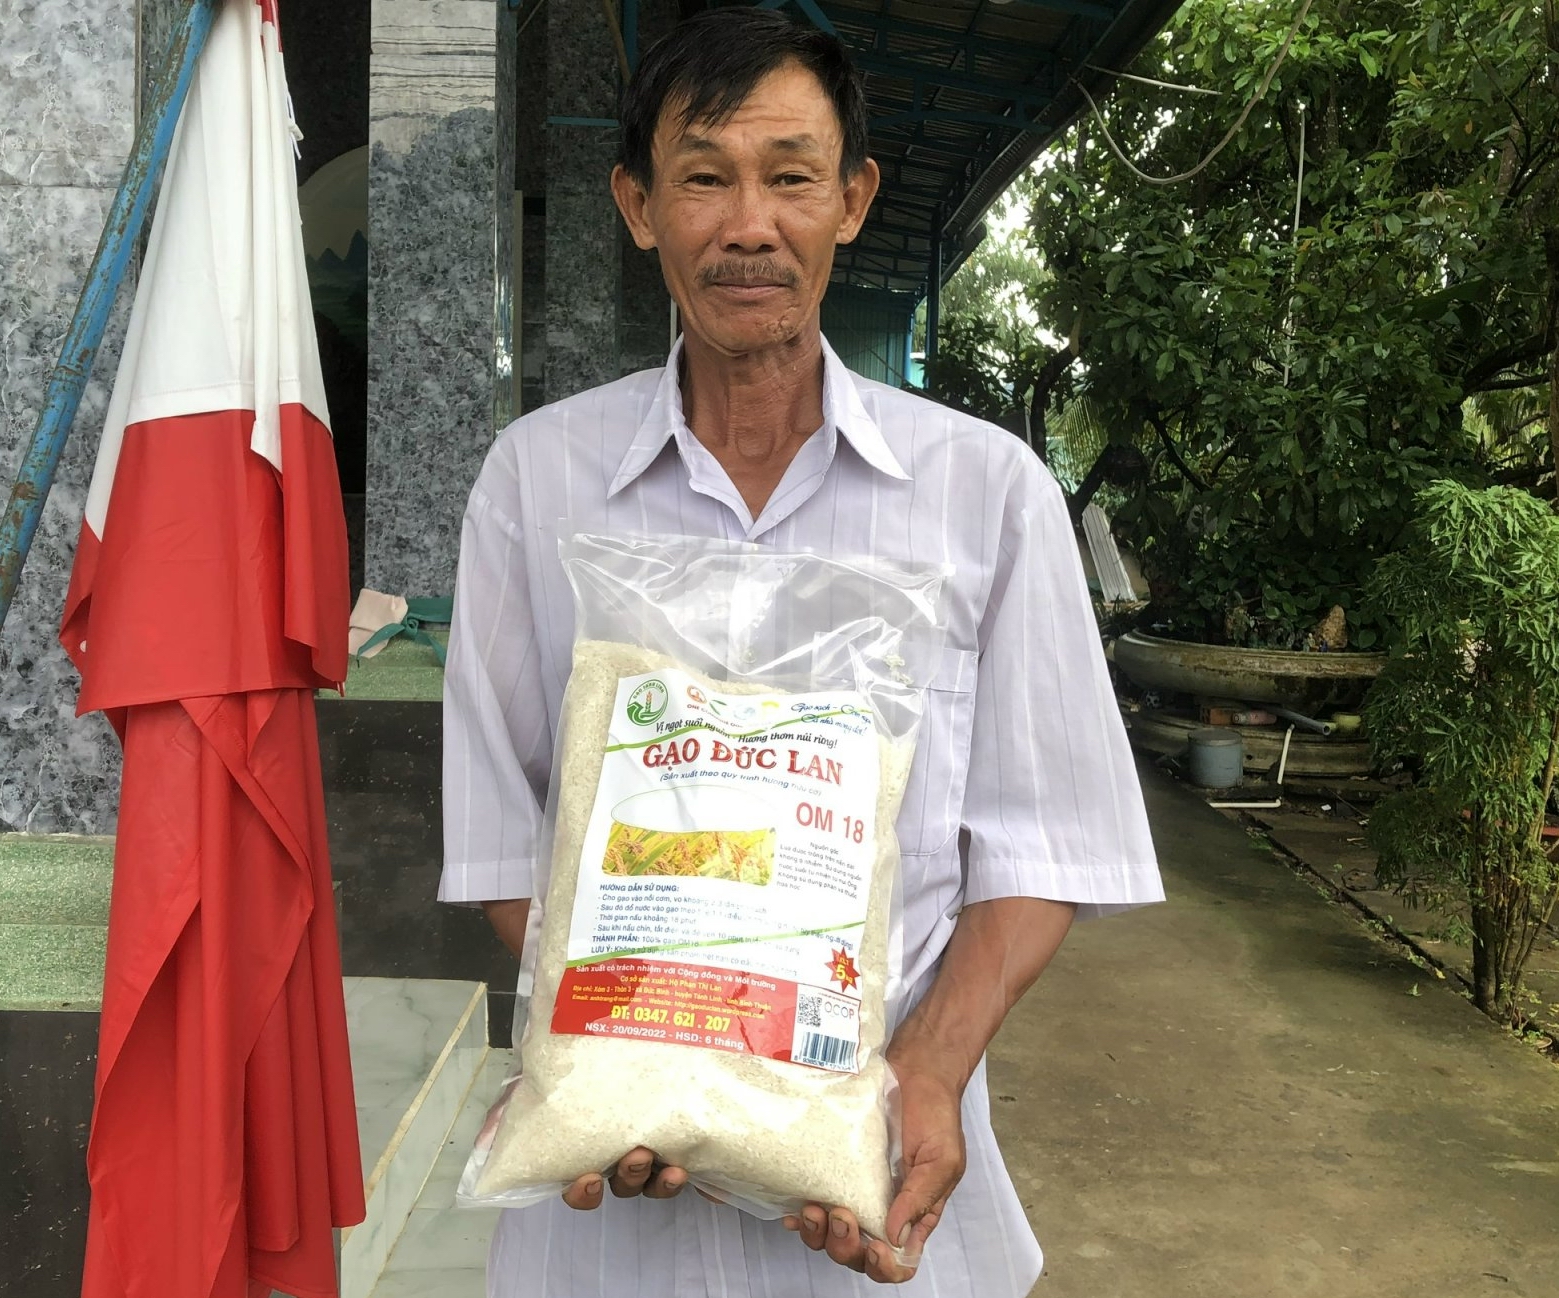 Hành trình đưa Gạo Tánh Linh ăn ngon, nổi tiếng trong và ngoài nước - Ảnh 6.